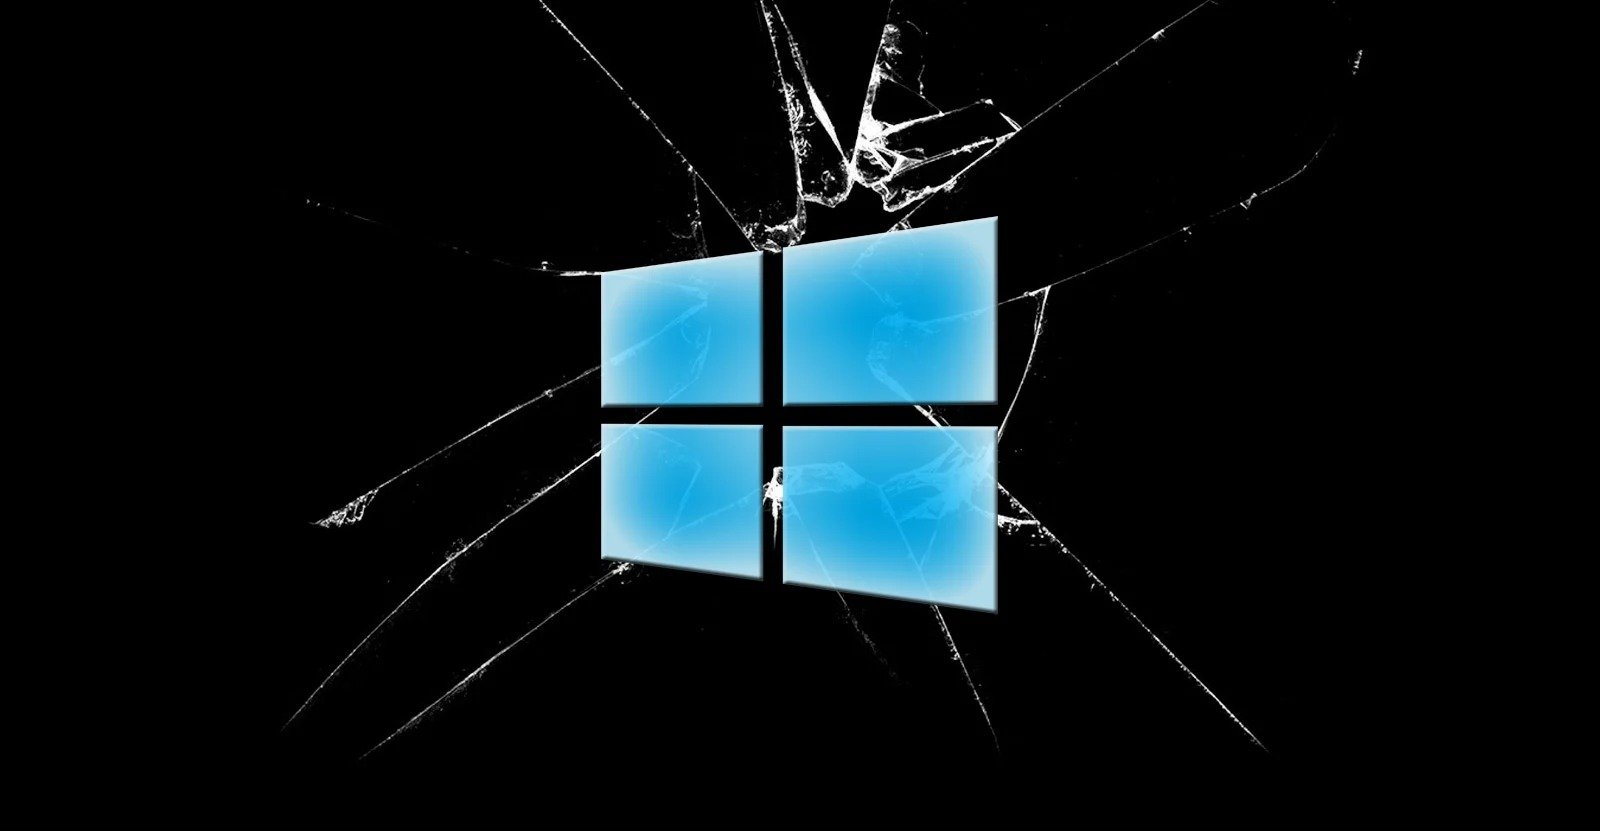 ใจมันได้!! โปรแกรมเมอร์ซื้อ Windows 10 แท้ใส่คีย์ไม่ผ่าน ติดต่อซัปพอร์ต Microsoft ลงแคร็กให้เรียบร้อย